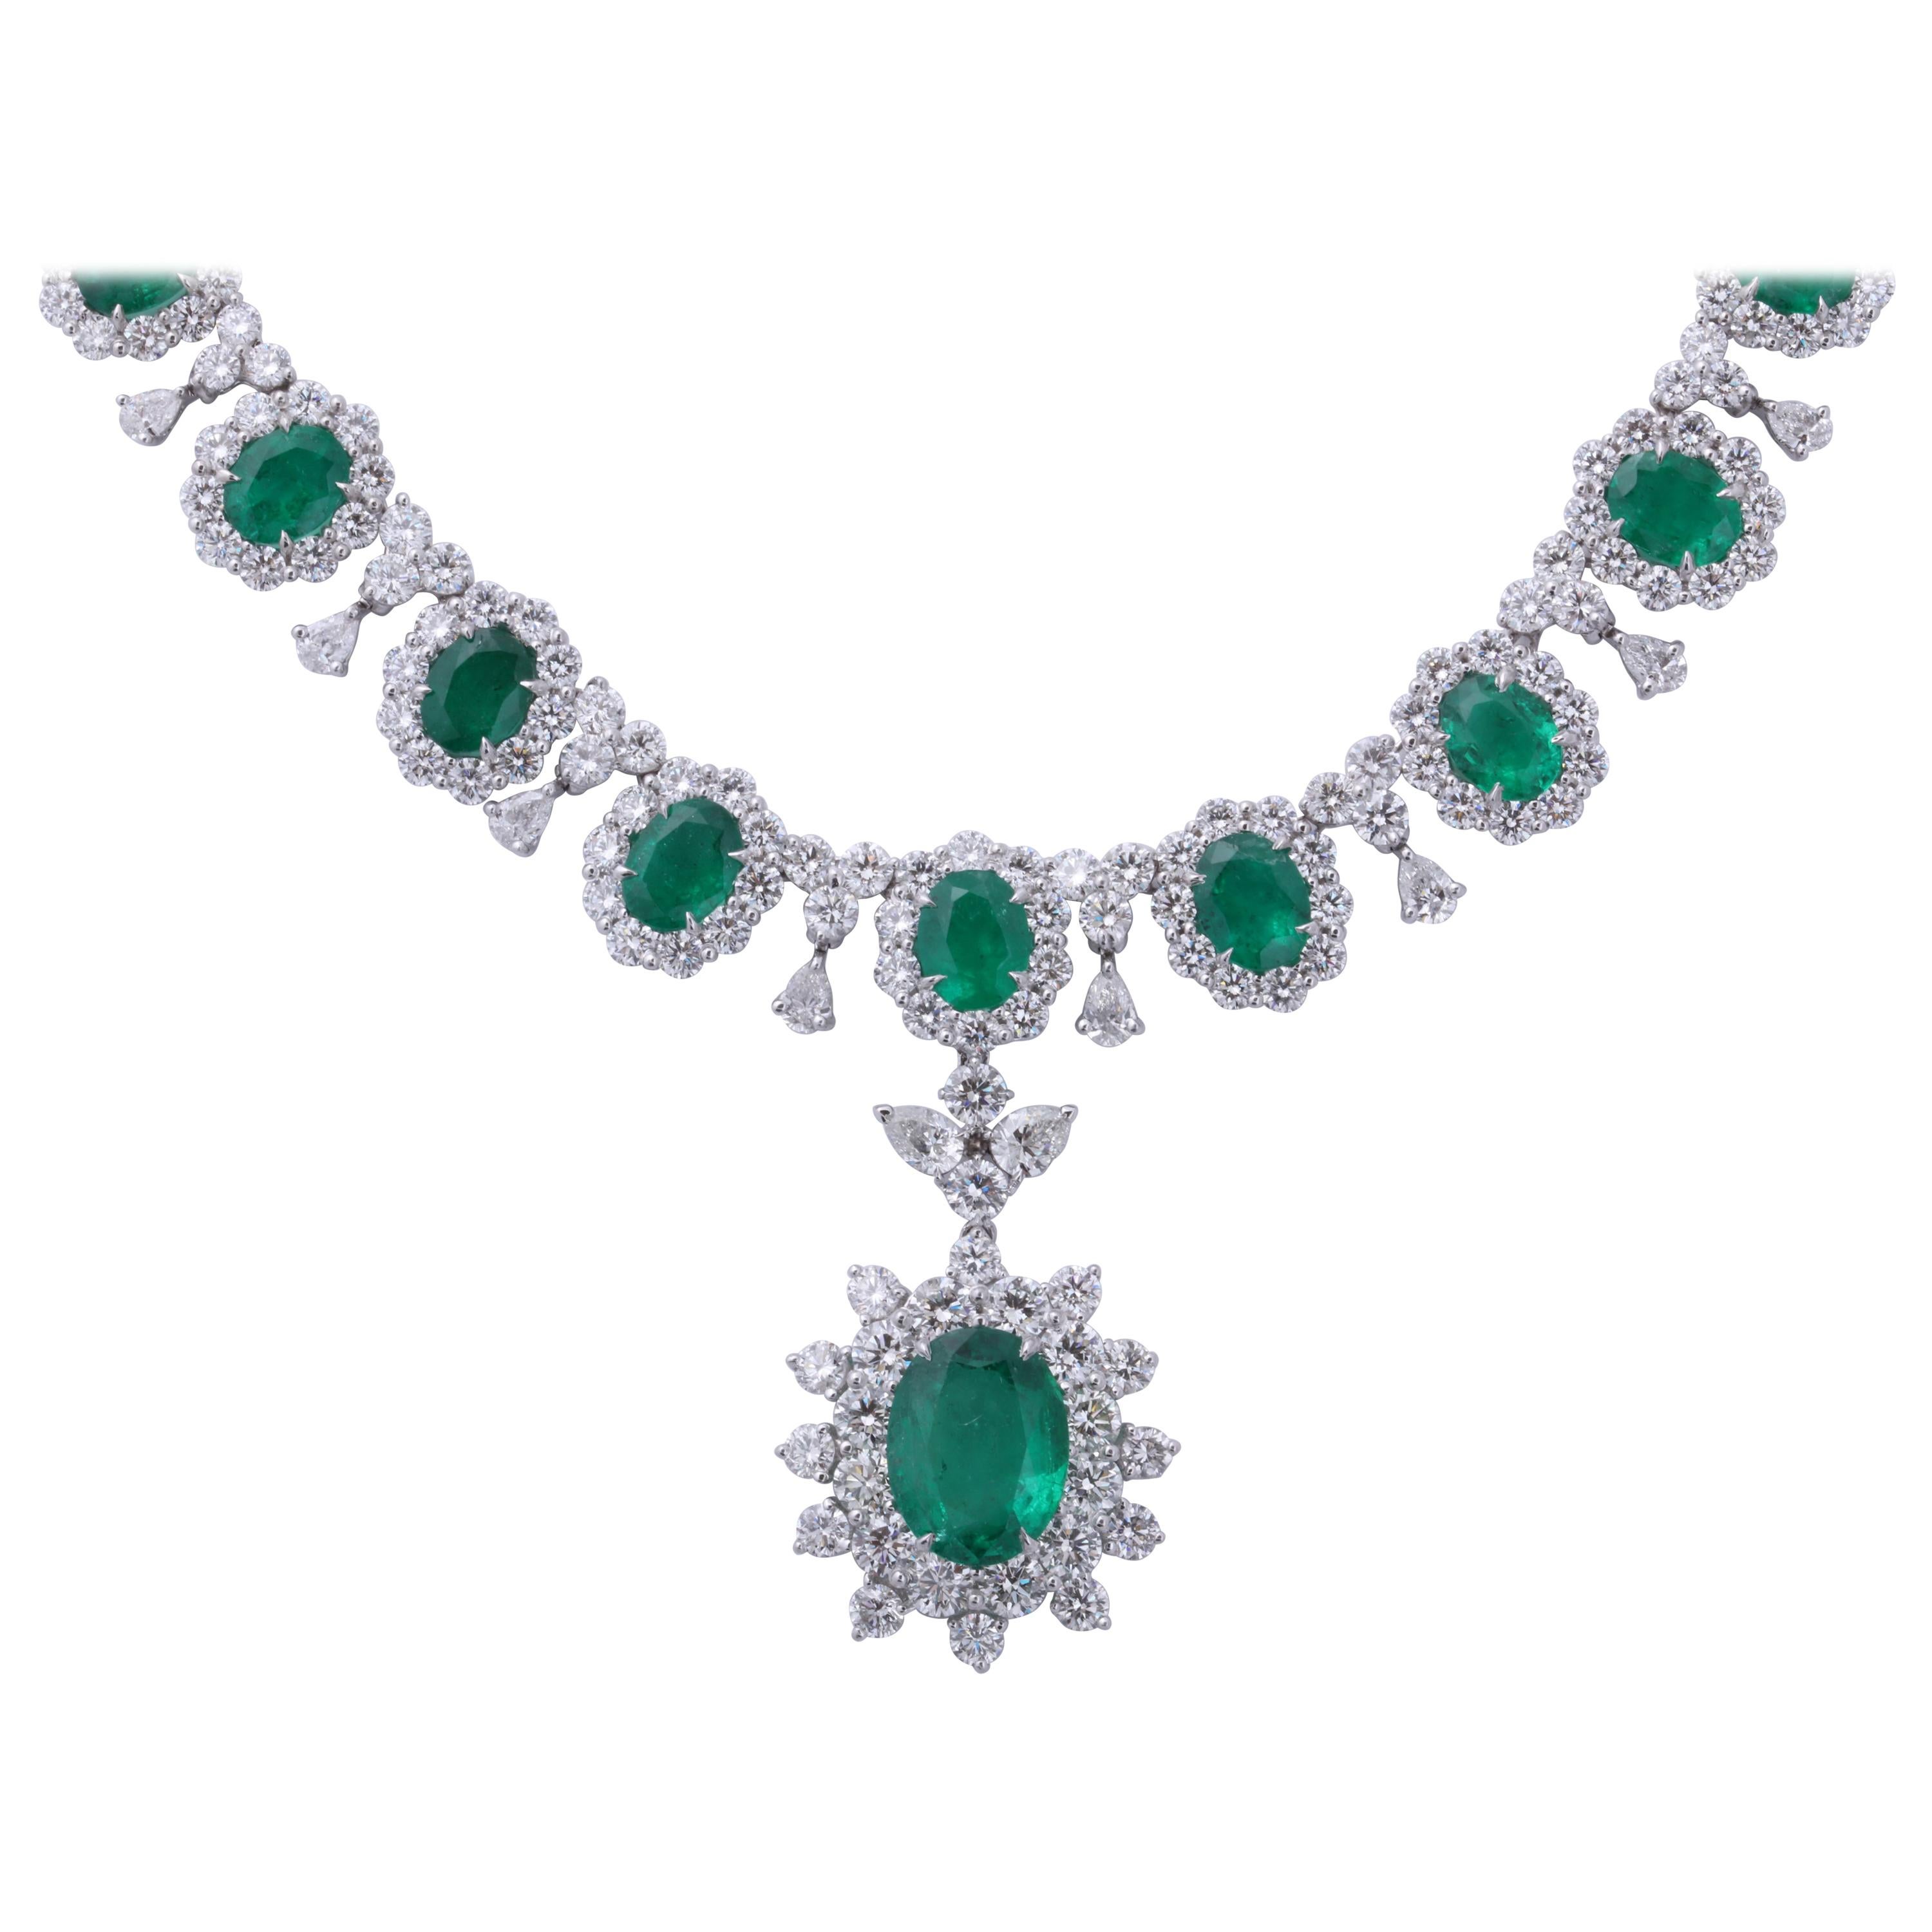 Halskette mit Smaragd und Diamanten